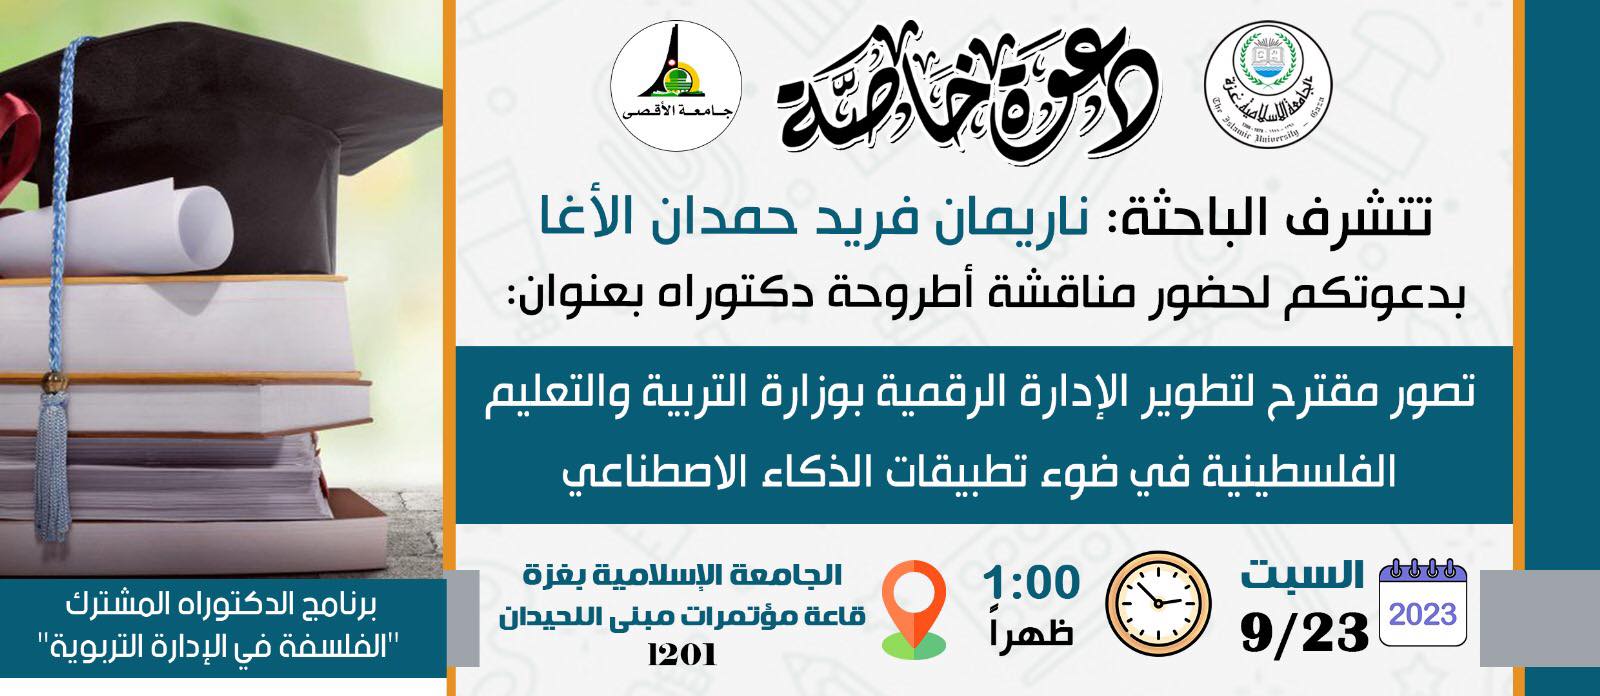 دعوة لحضور مناقشة أطروحة الدكتوراه للباحثة ناريمان فريد الأغا